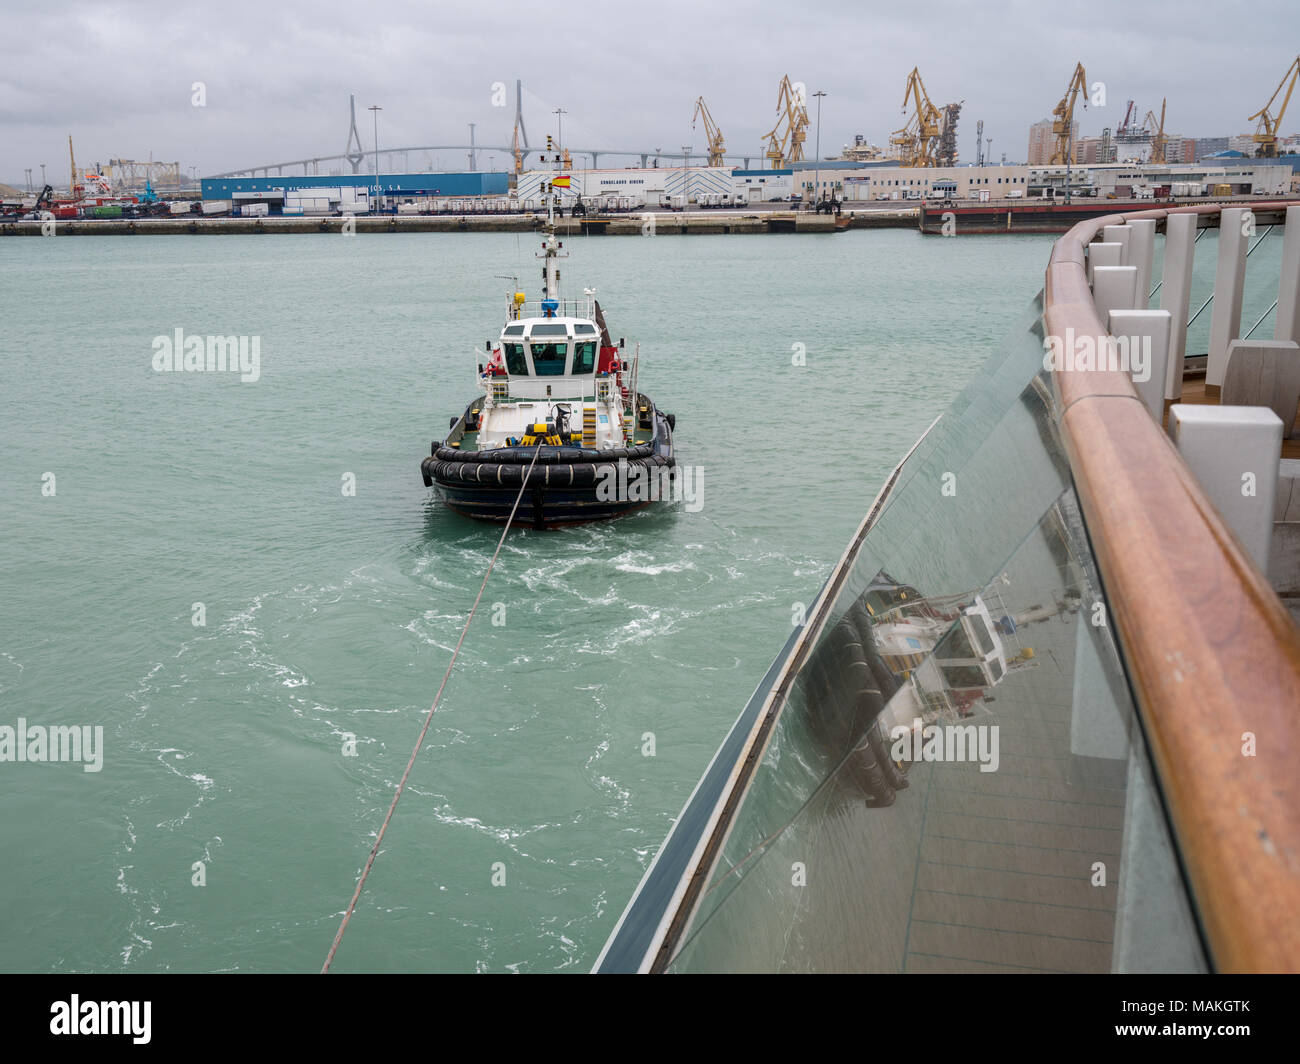 Tugboat in harbor of Cadiz, Southern Spain Stock Photo